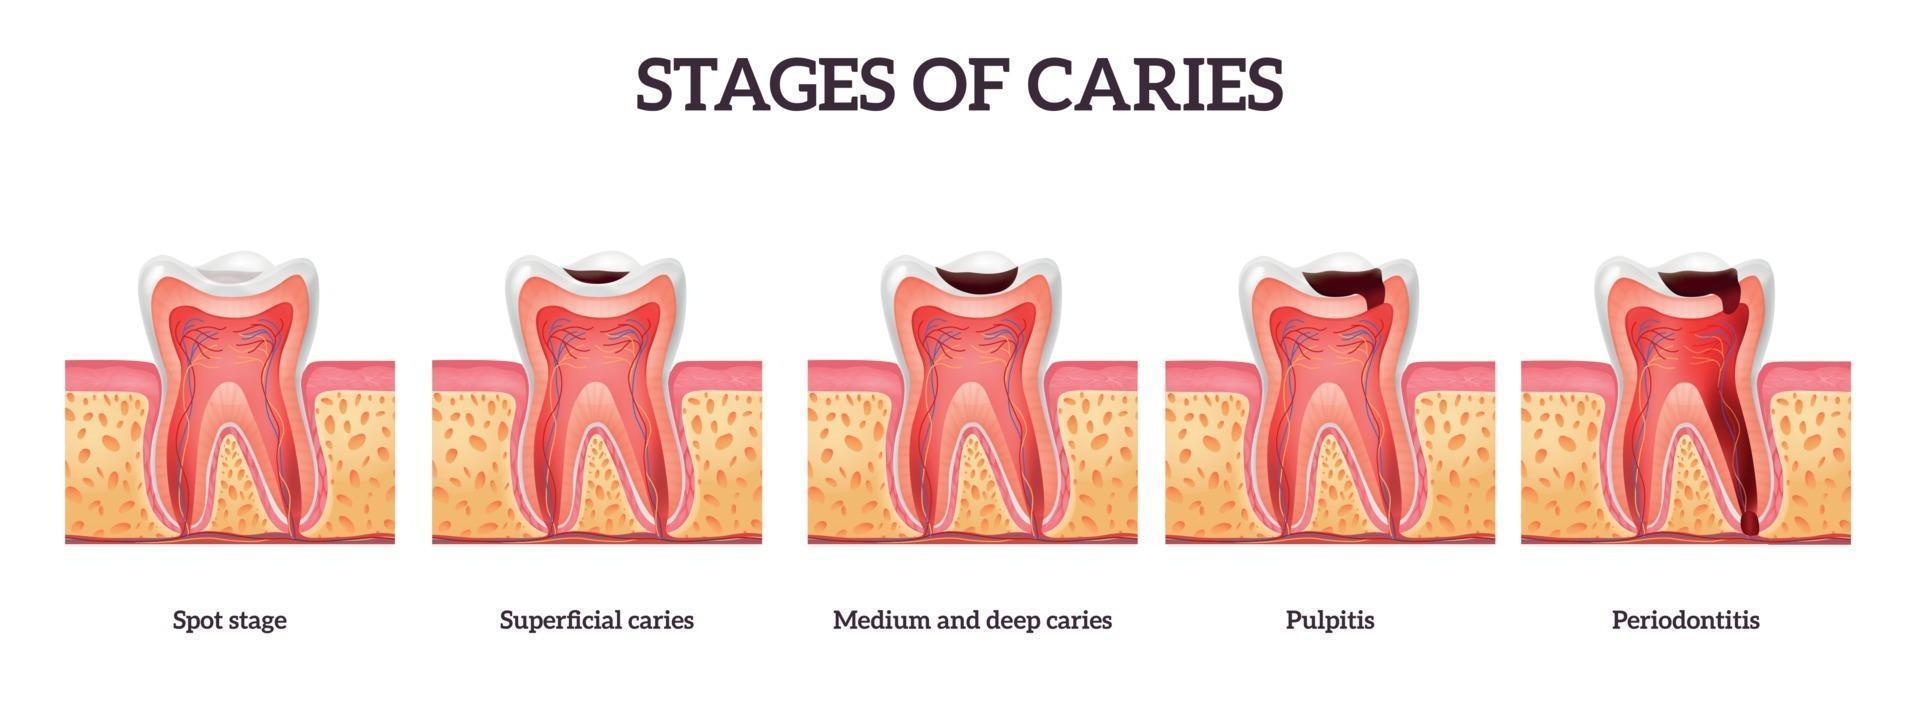 Stadien der Zahnzerstörung vektor